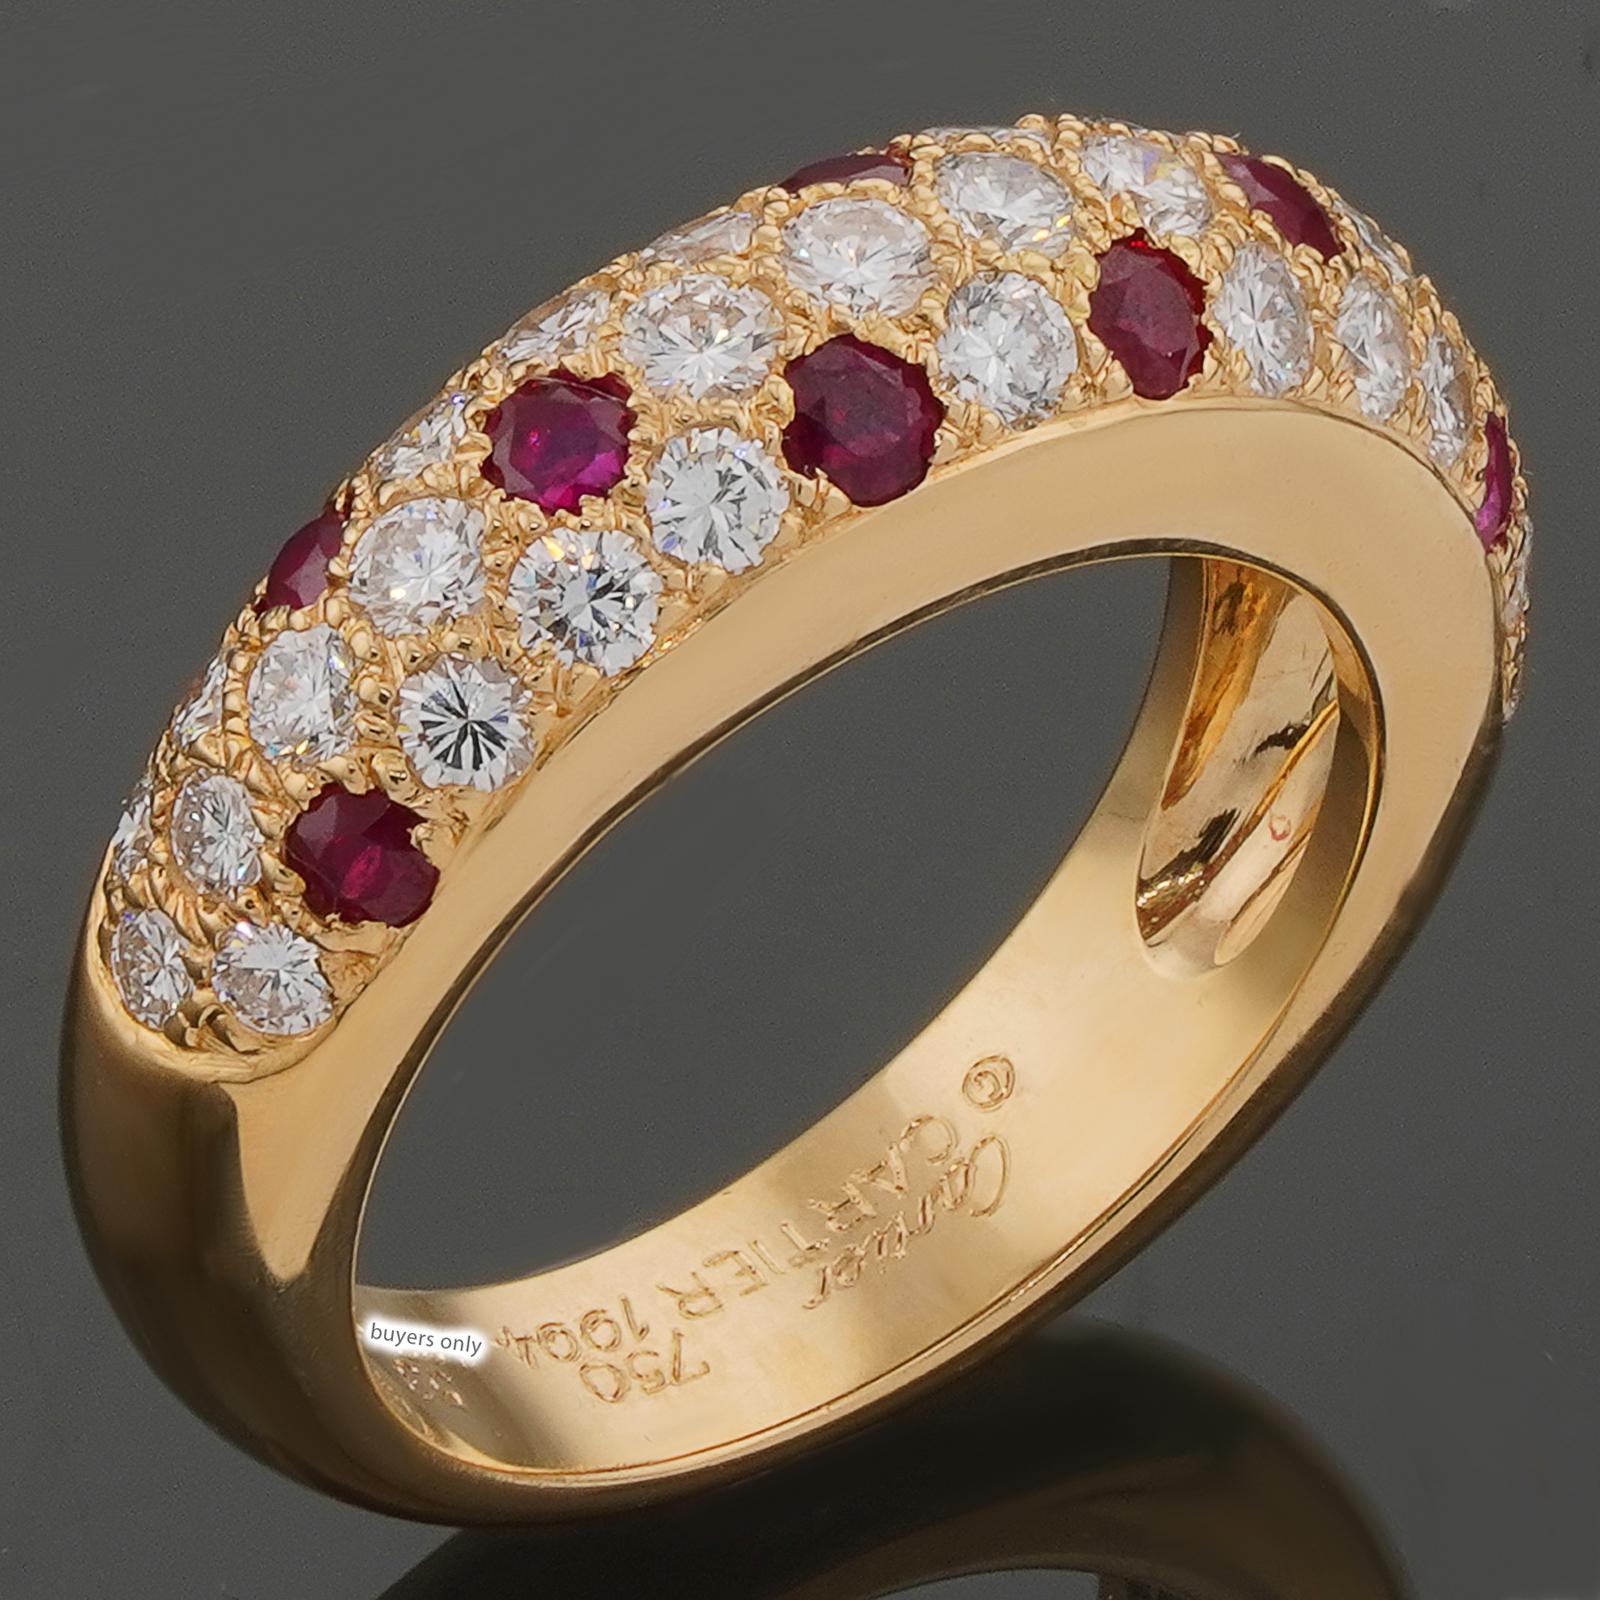 Cette bague classique authentique de Cartier est réalisée en or jaune 18 carats et sertie de diamants ronds E-F-G VVS1-VVS2 de taille brillant et de rubis rouges ronds. Fabriquées en France en 1994. Dimensions : 0,23